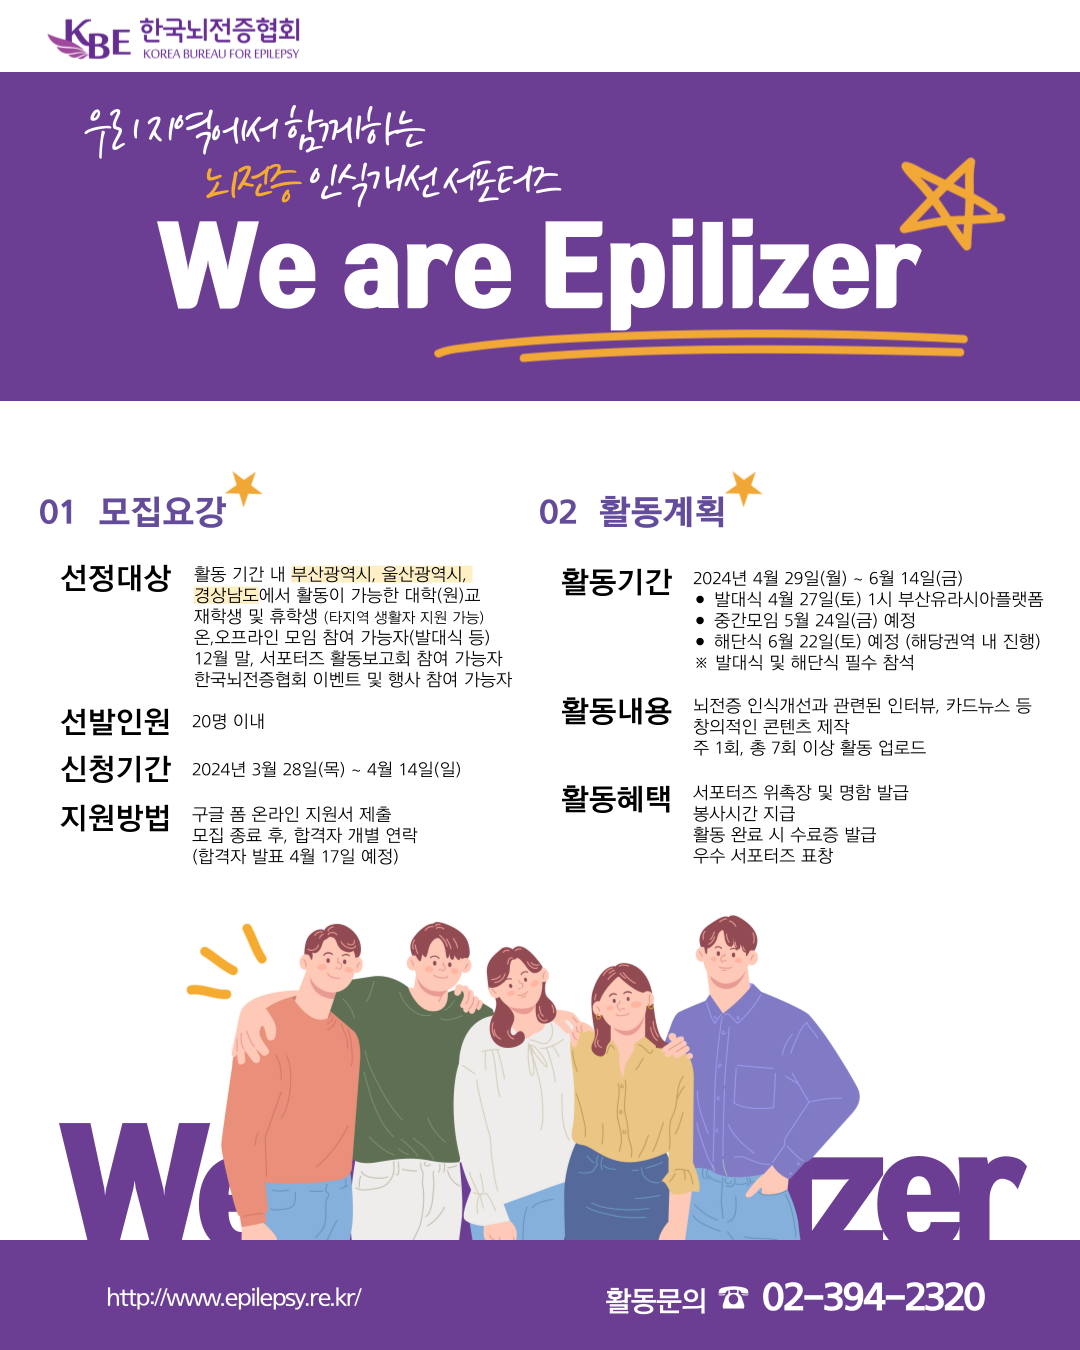 제17기 뇌전증 인식개선 서포터즈 "We are Epilizer"